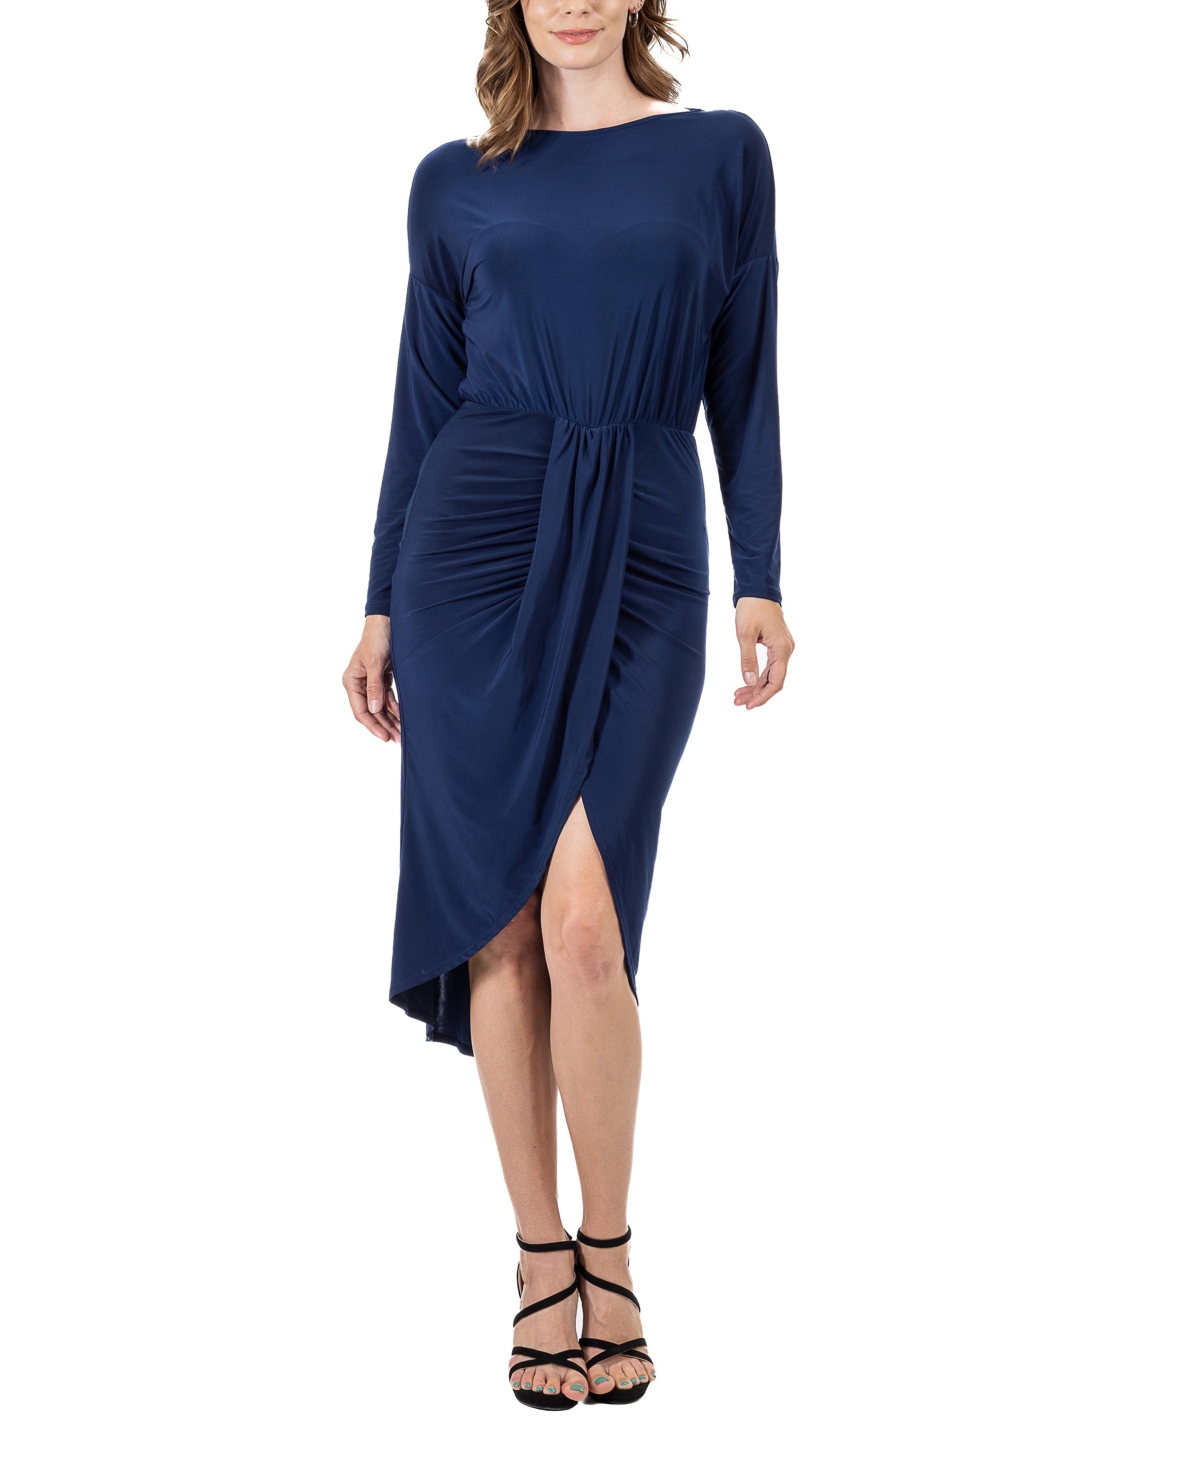 Women's Long Sleeve Knee Length Dress - Burgundy